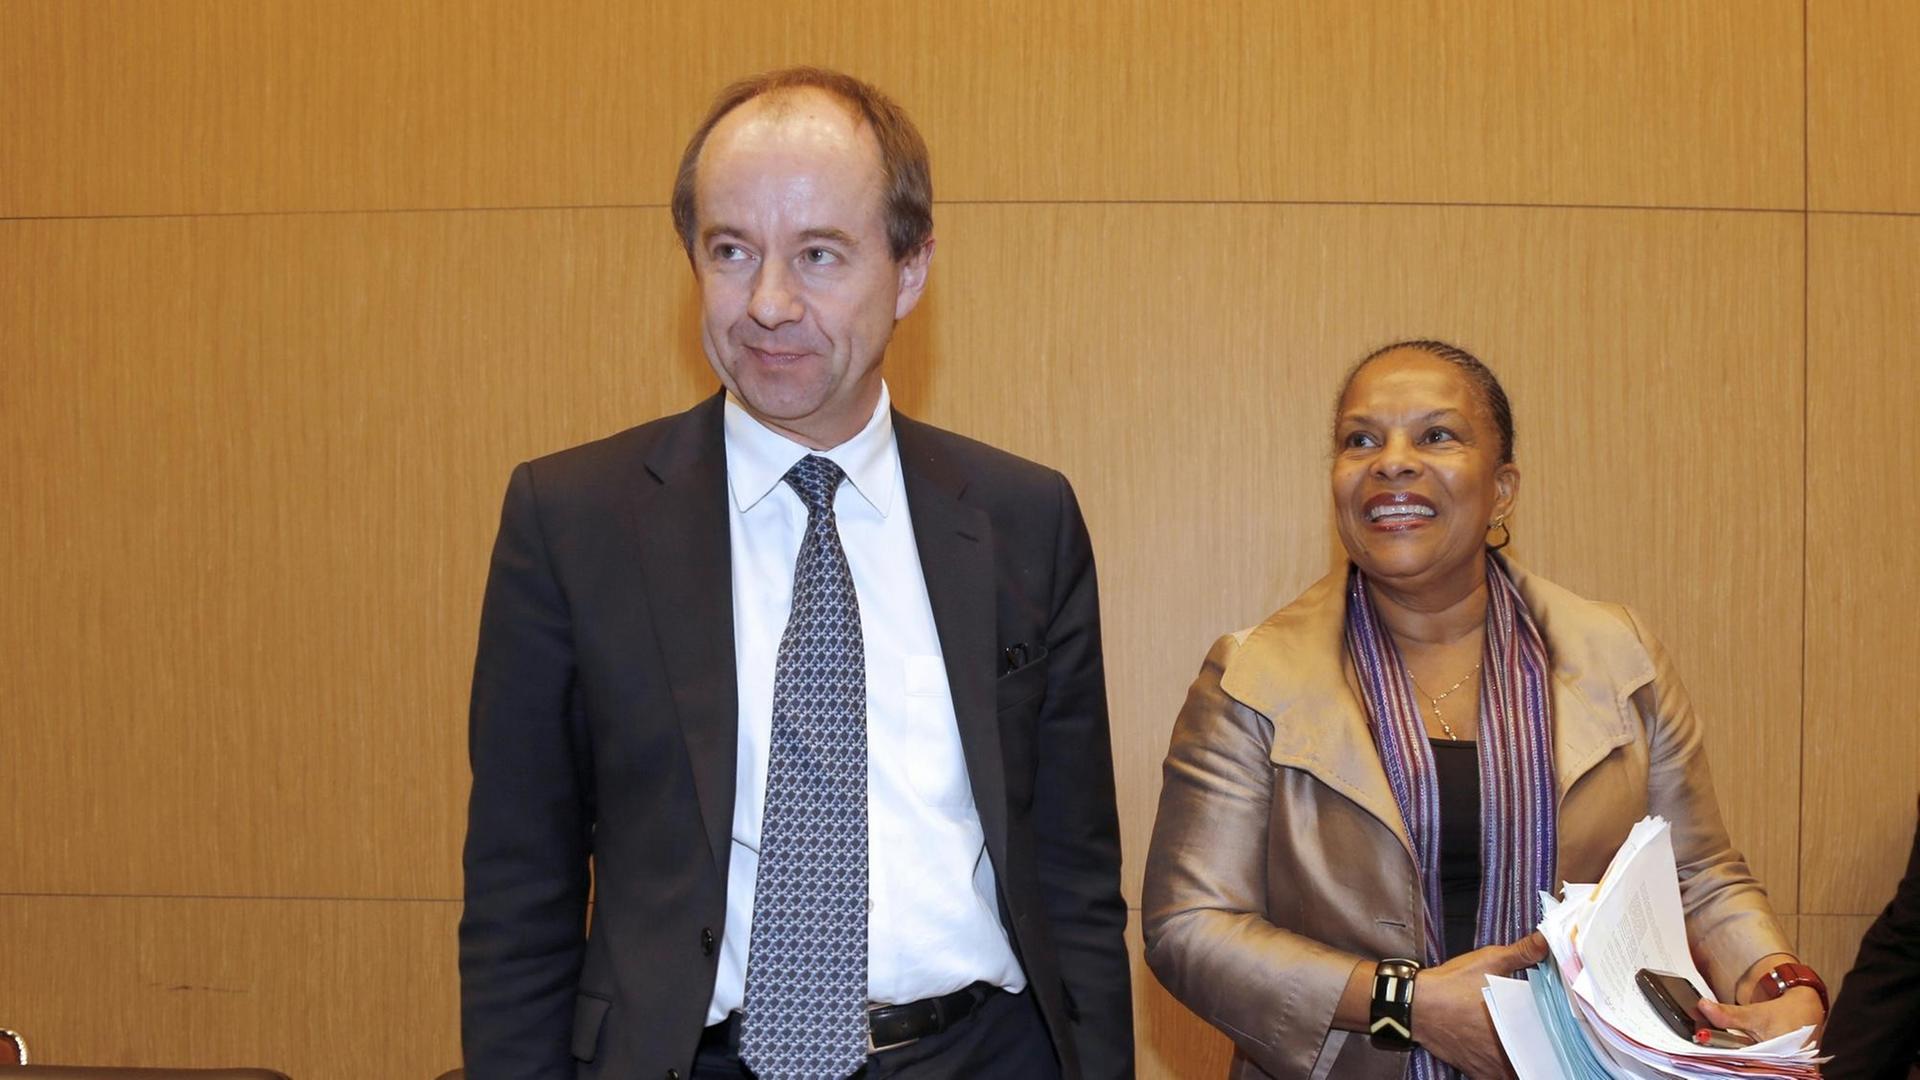 Jean-Jacques Urvoas, neuer Justizminister und Christiane Taubira, ehamalige Justizministerin Frankreichs